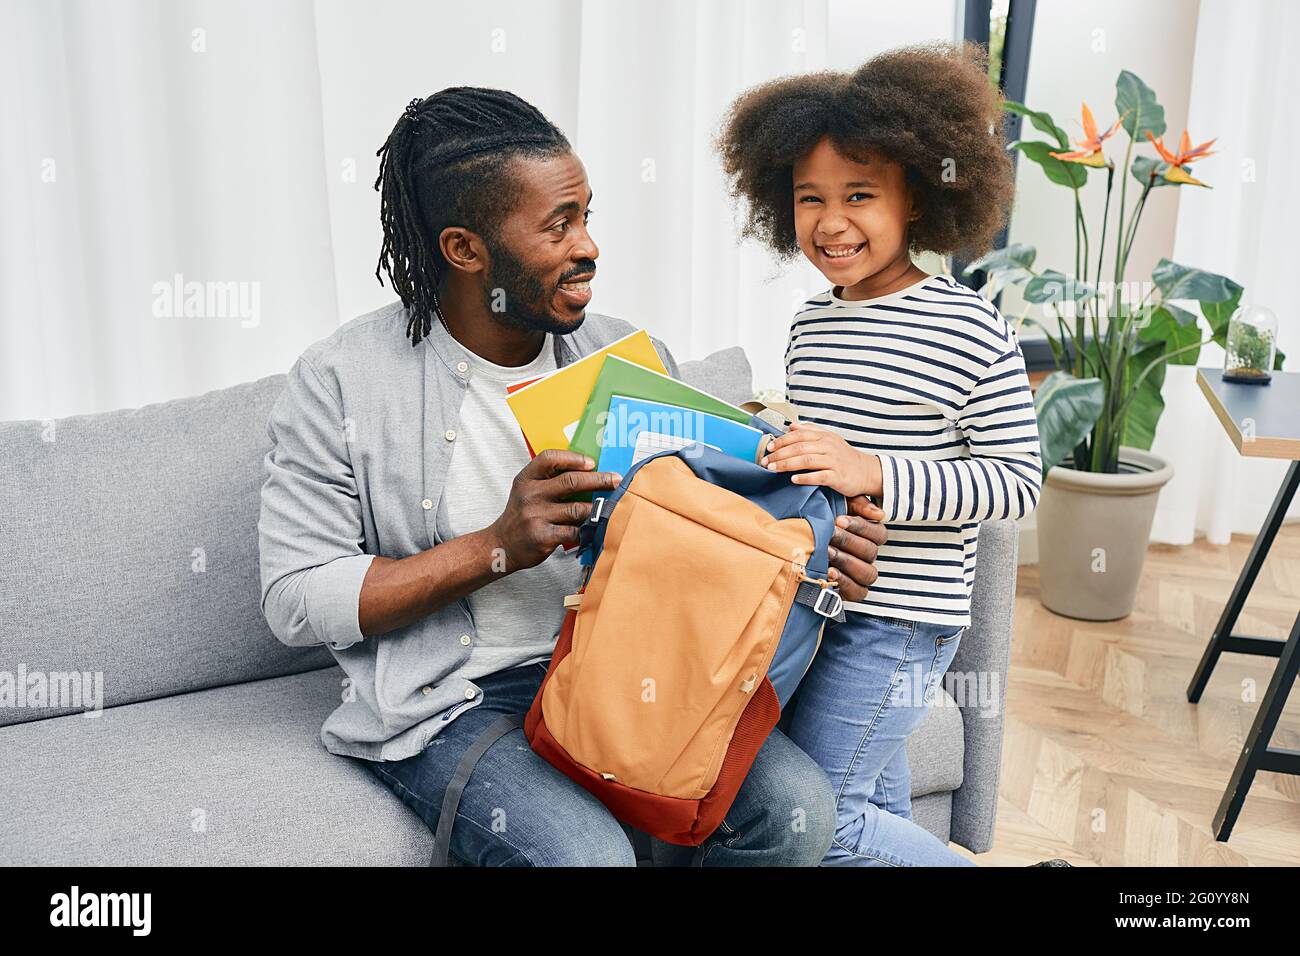 Vatertag. Vater hilft Tochter, farbige Copybooks vor ihrem ersten Schultag in die Schultasche zu legen. Glückliche Vaterschaft Stockfoto